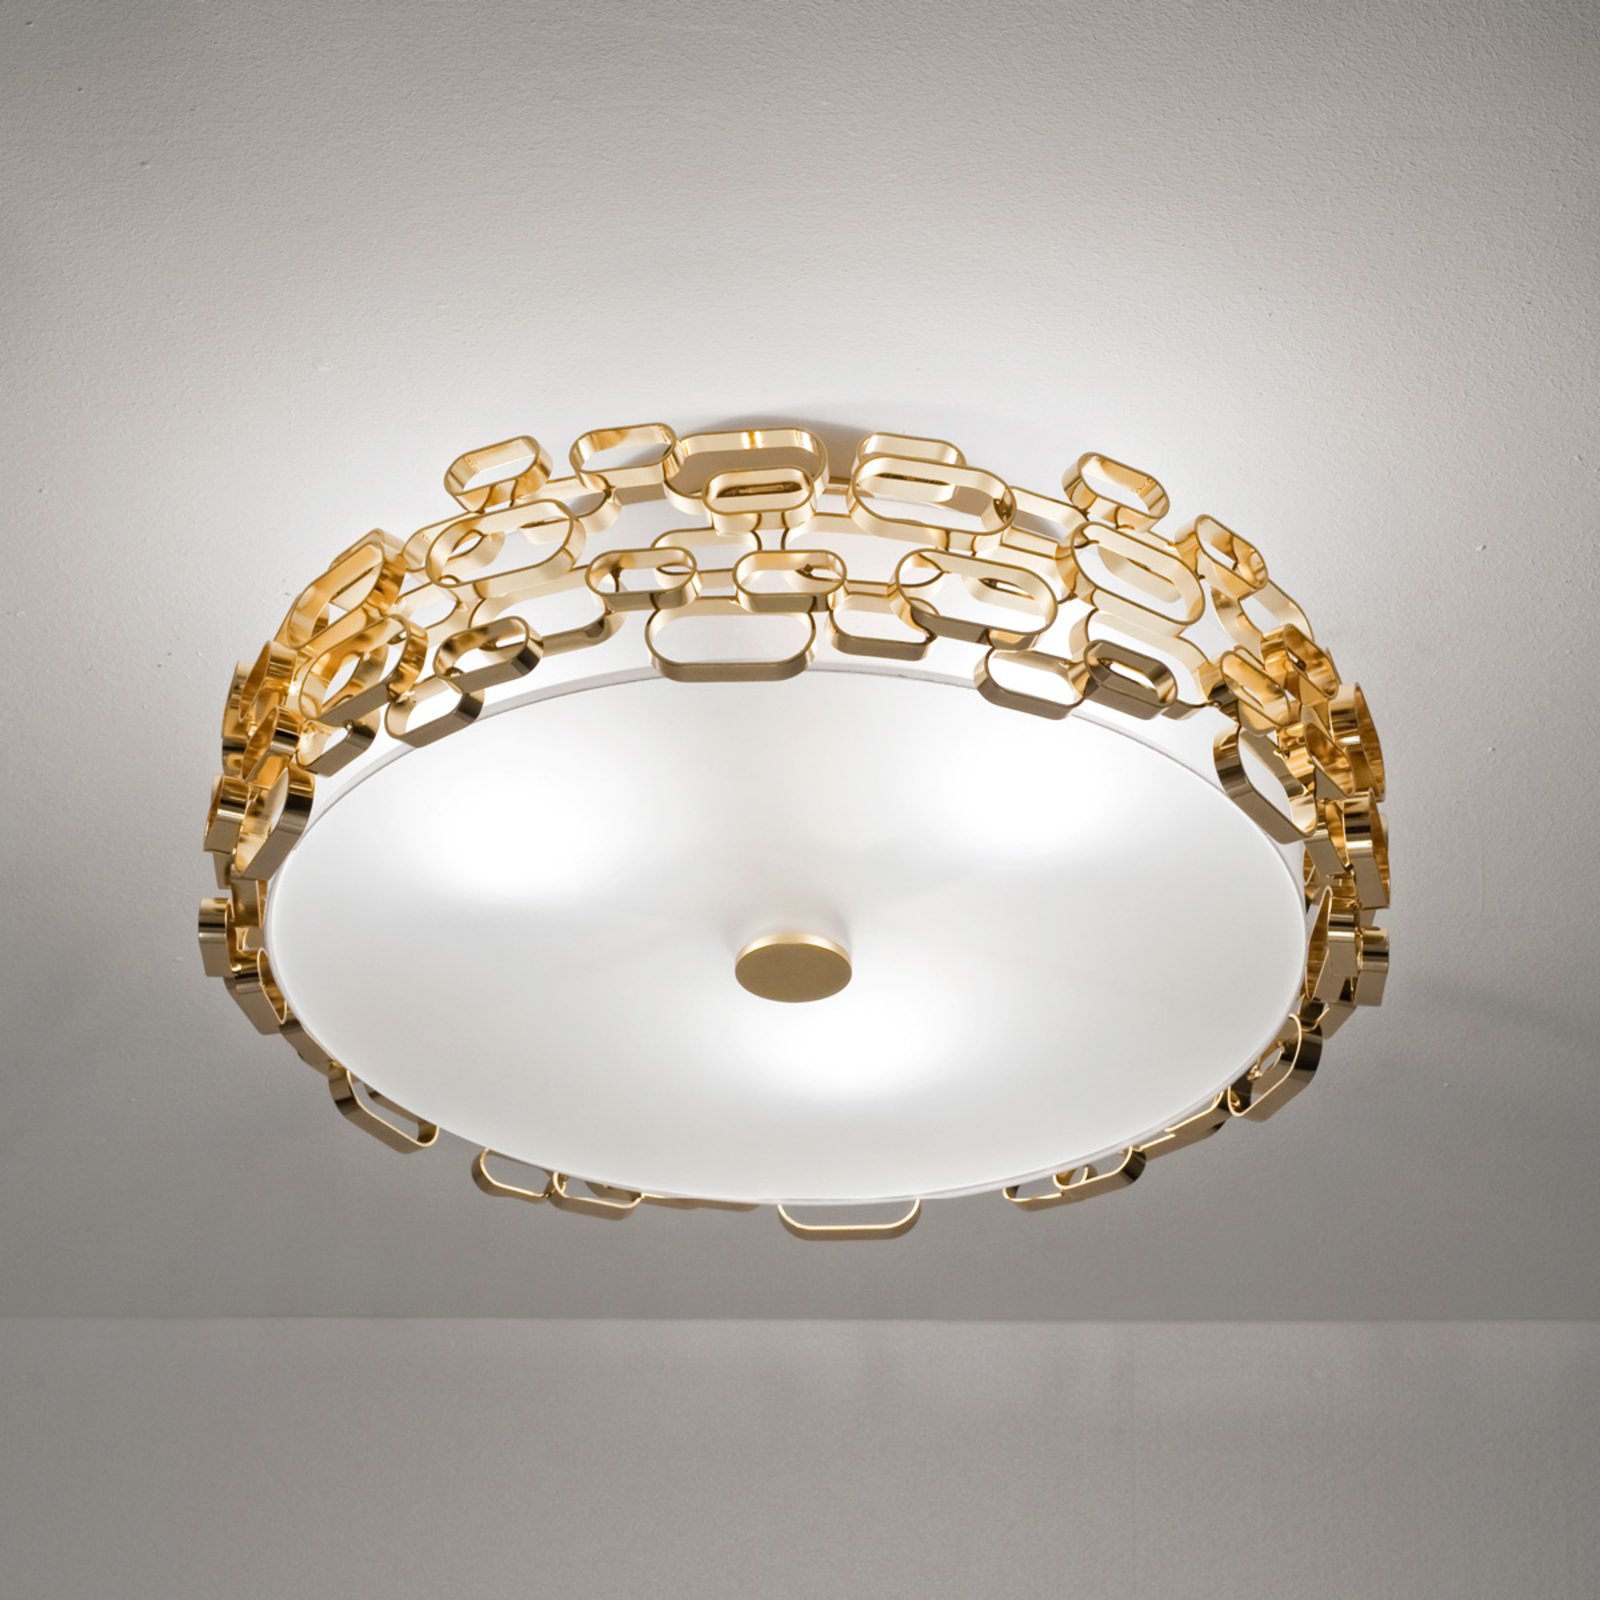 Glamour - designer ceiling light in gold